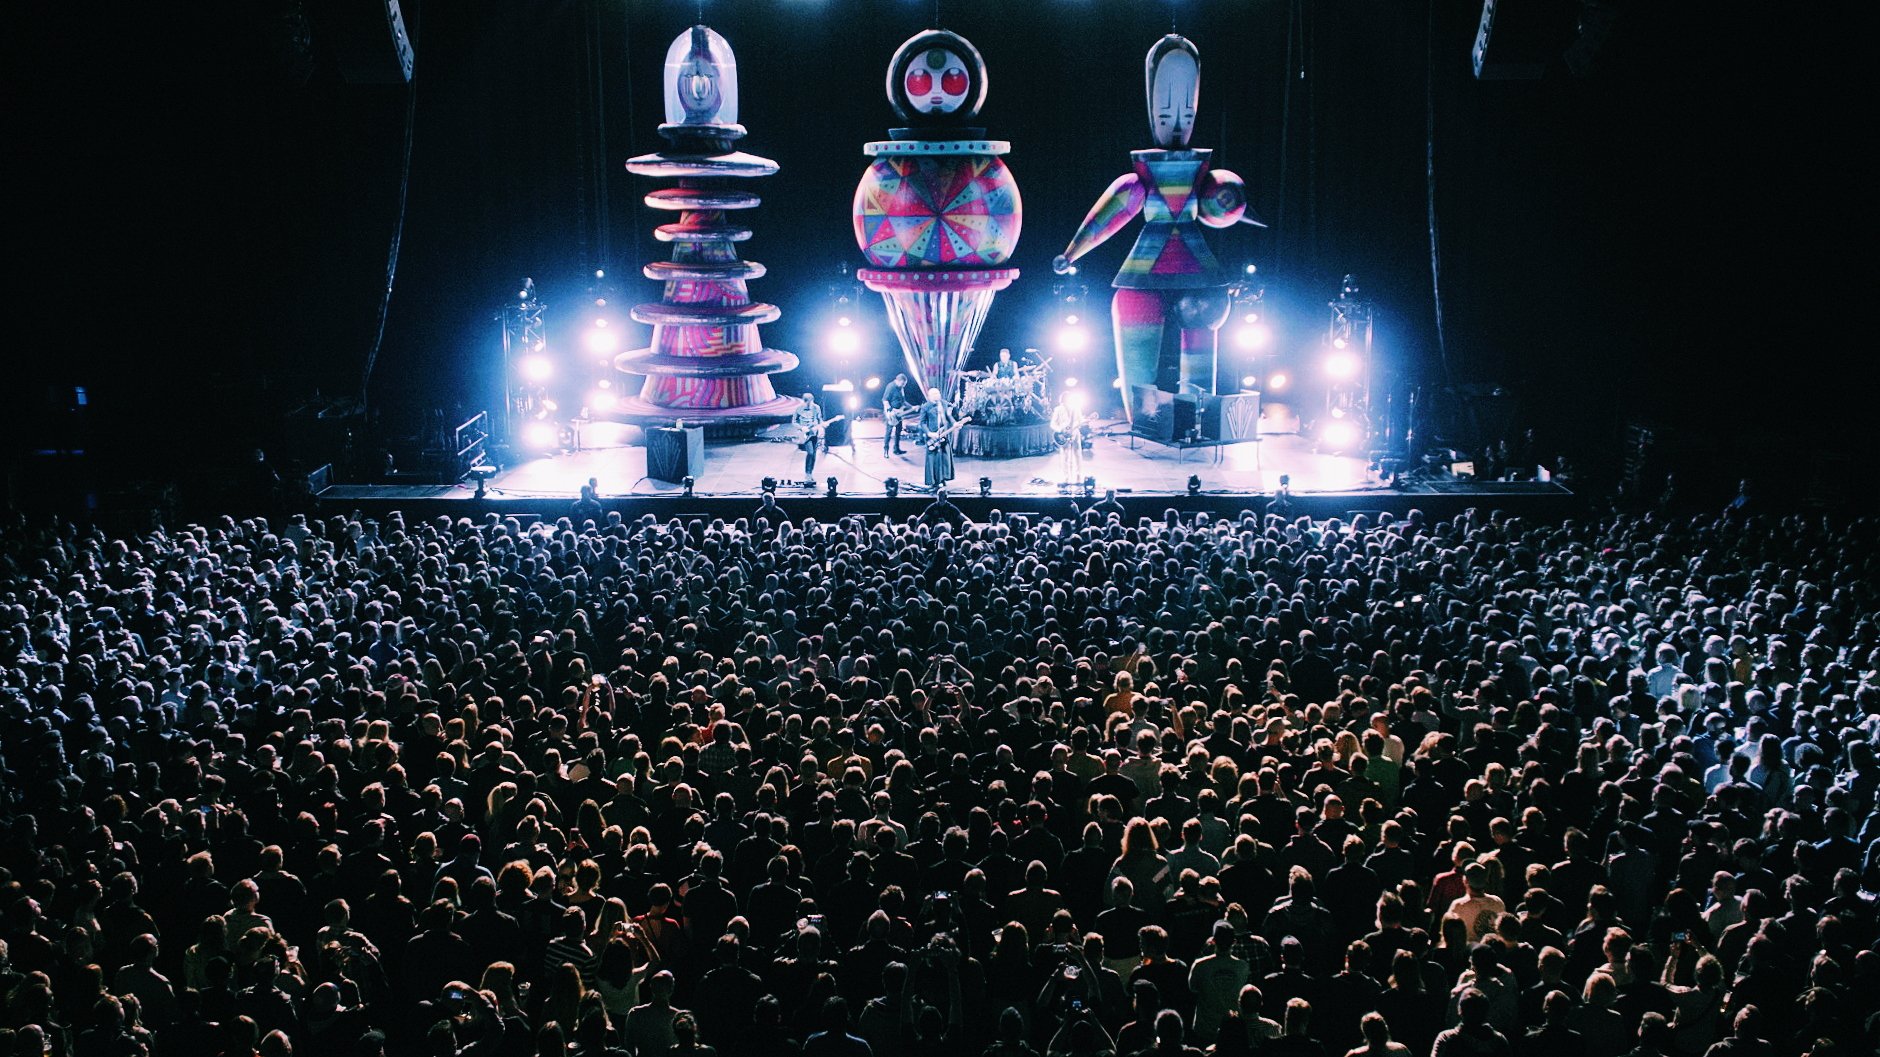 Gepolijst Ontoegankelijk Buurt Live Nation Belgium on Twitter: "The Smashing Pumpkins' ongoing tour is  looking incredible! Can't wait to welcome the reunited line-up in Antwerp  next Monday. 🤘 📅 Lotto Arena, Antwerp - 10 June